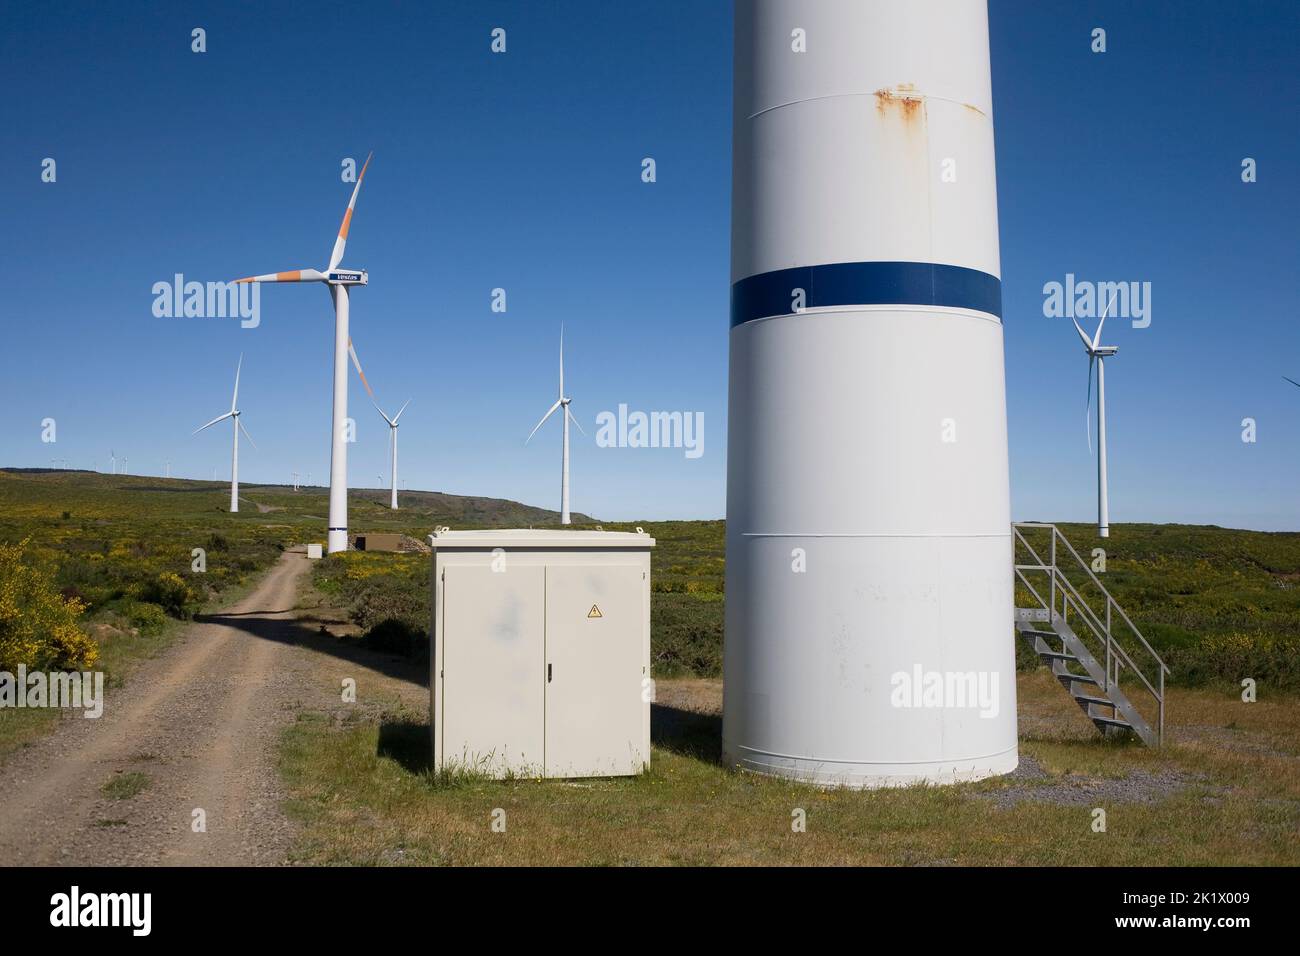 Wind farm in Paul de Serra area of Madeira with multiple turbines Stock Photo